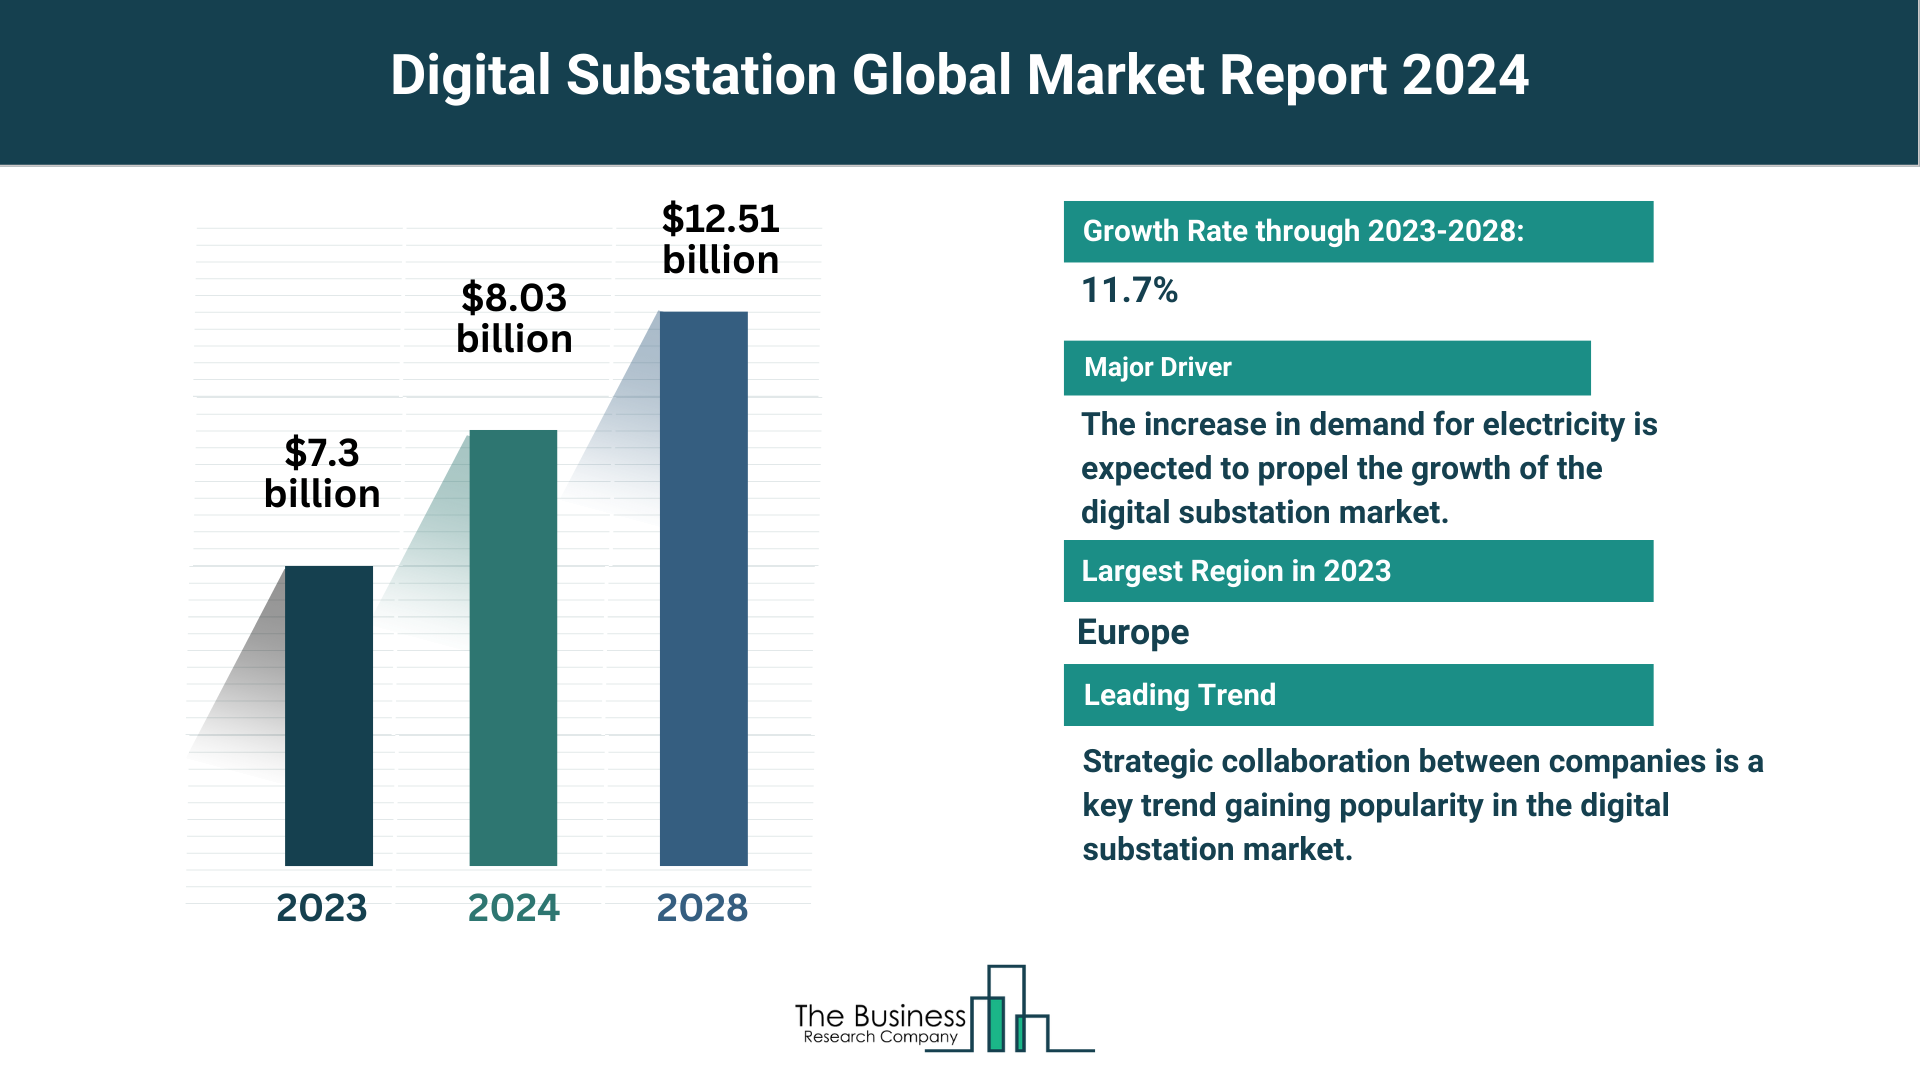 Global Digital Substation Market